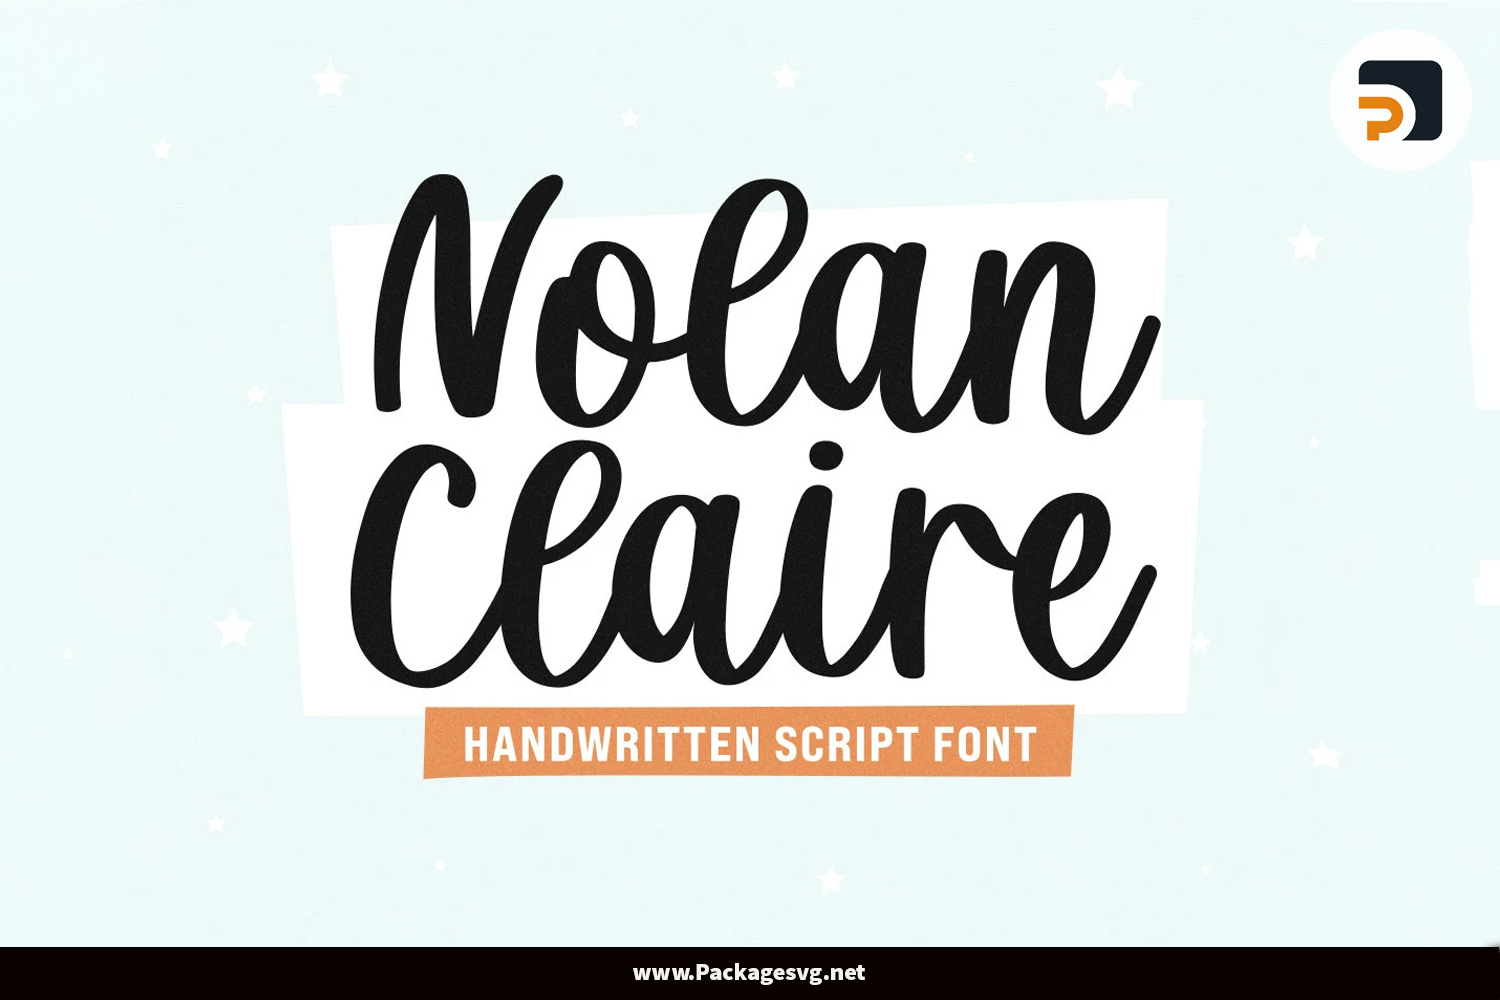 Nolan Claire Font